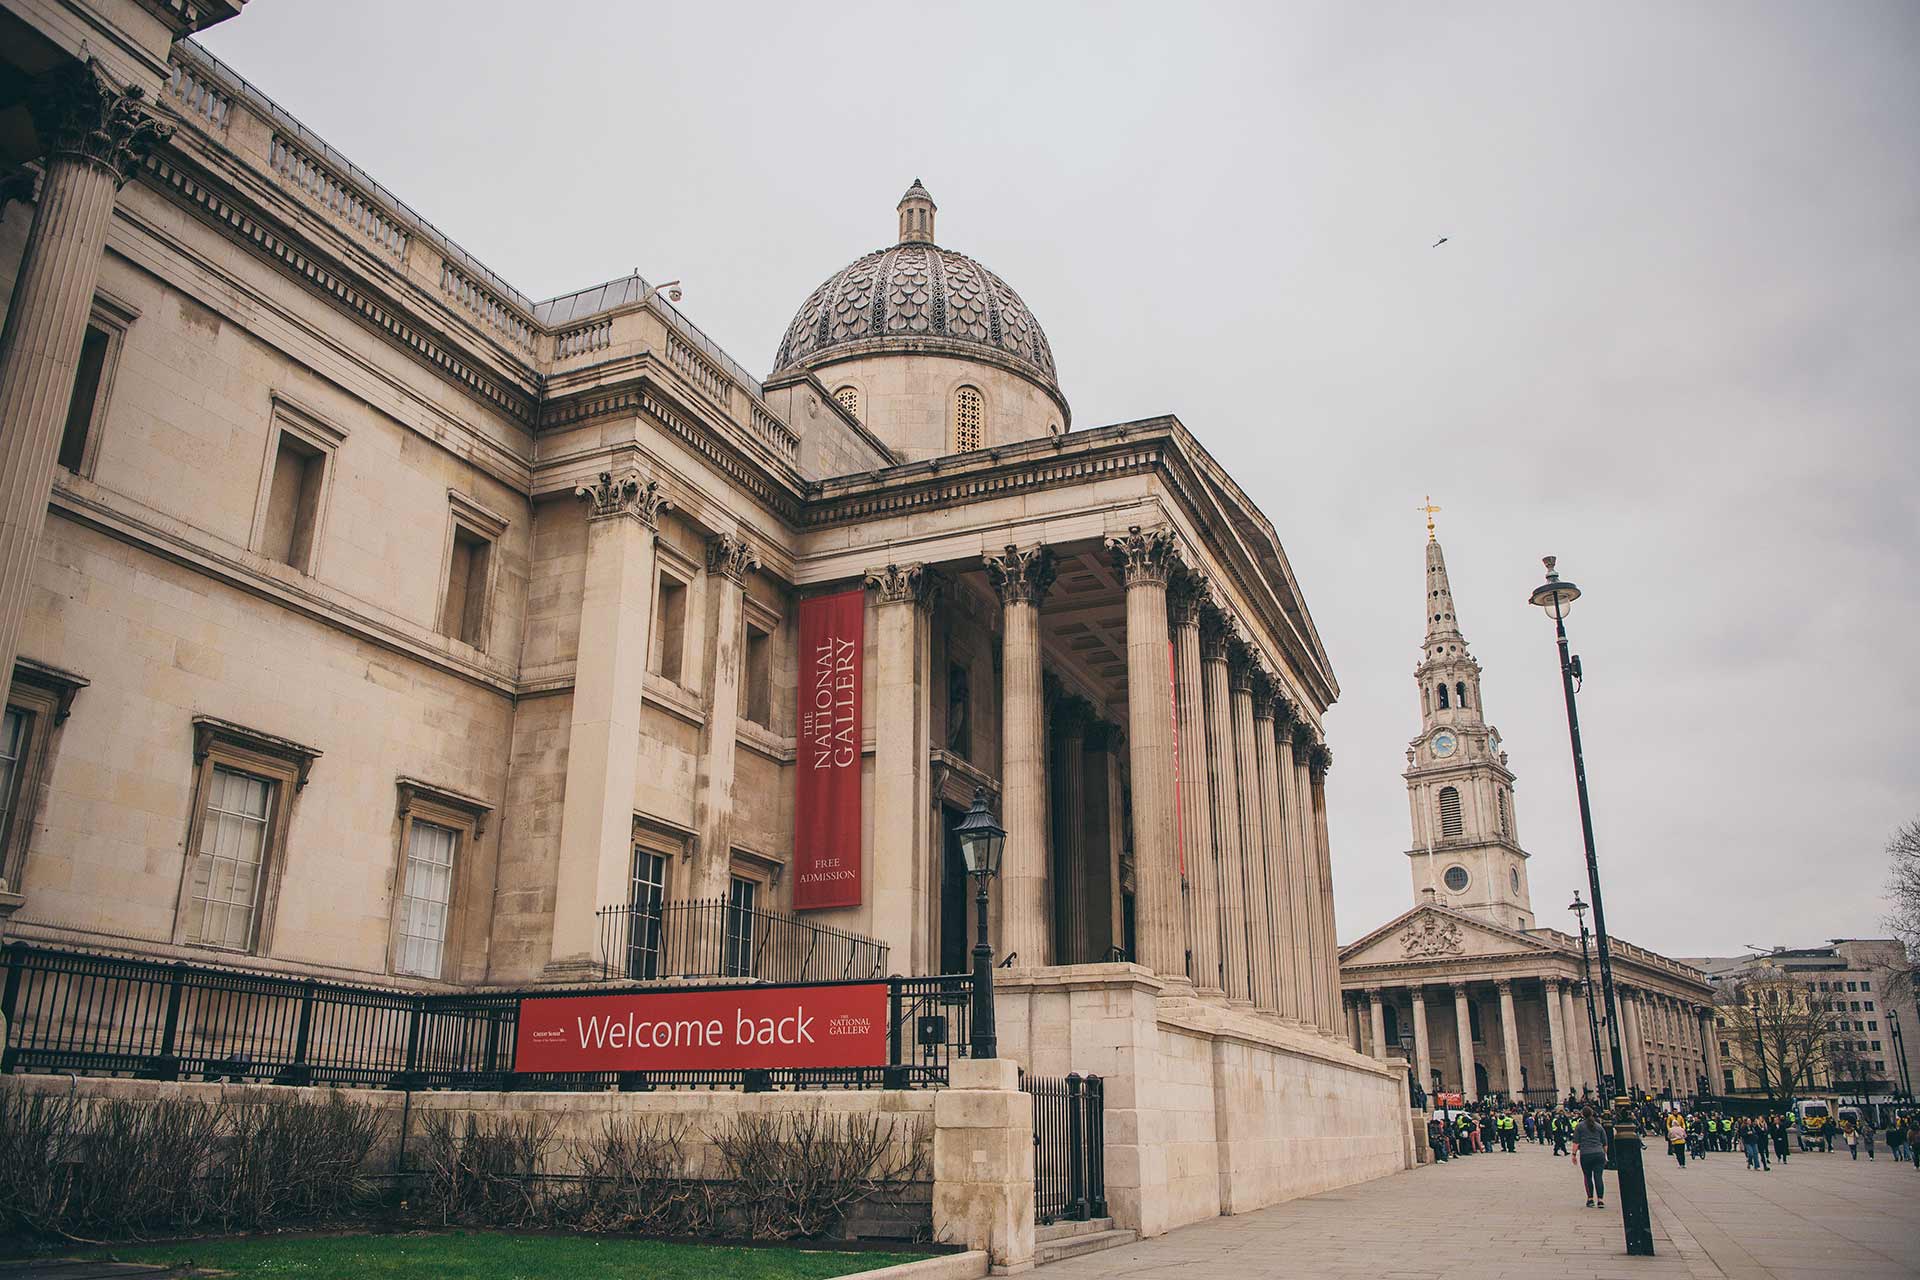 Haiku aanbidden Gedrag Gratis musea in Londen: deze 10 museums in Londen kun je gratis bezoeken |  WAT ZIJ ZEGT